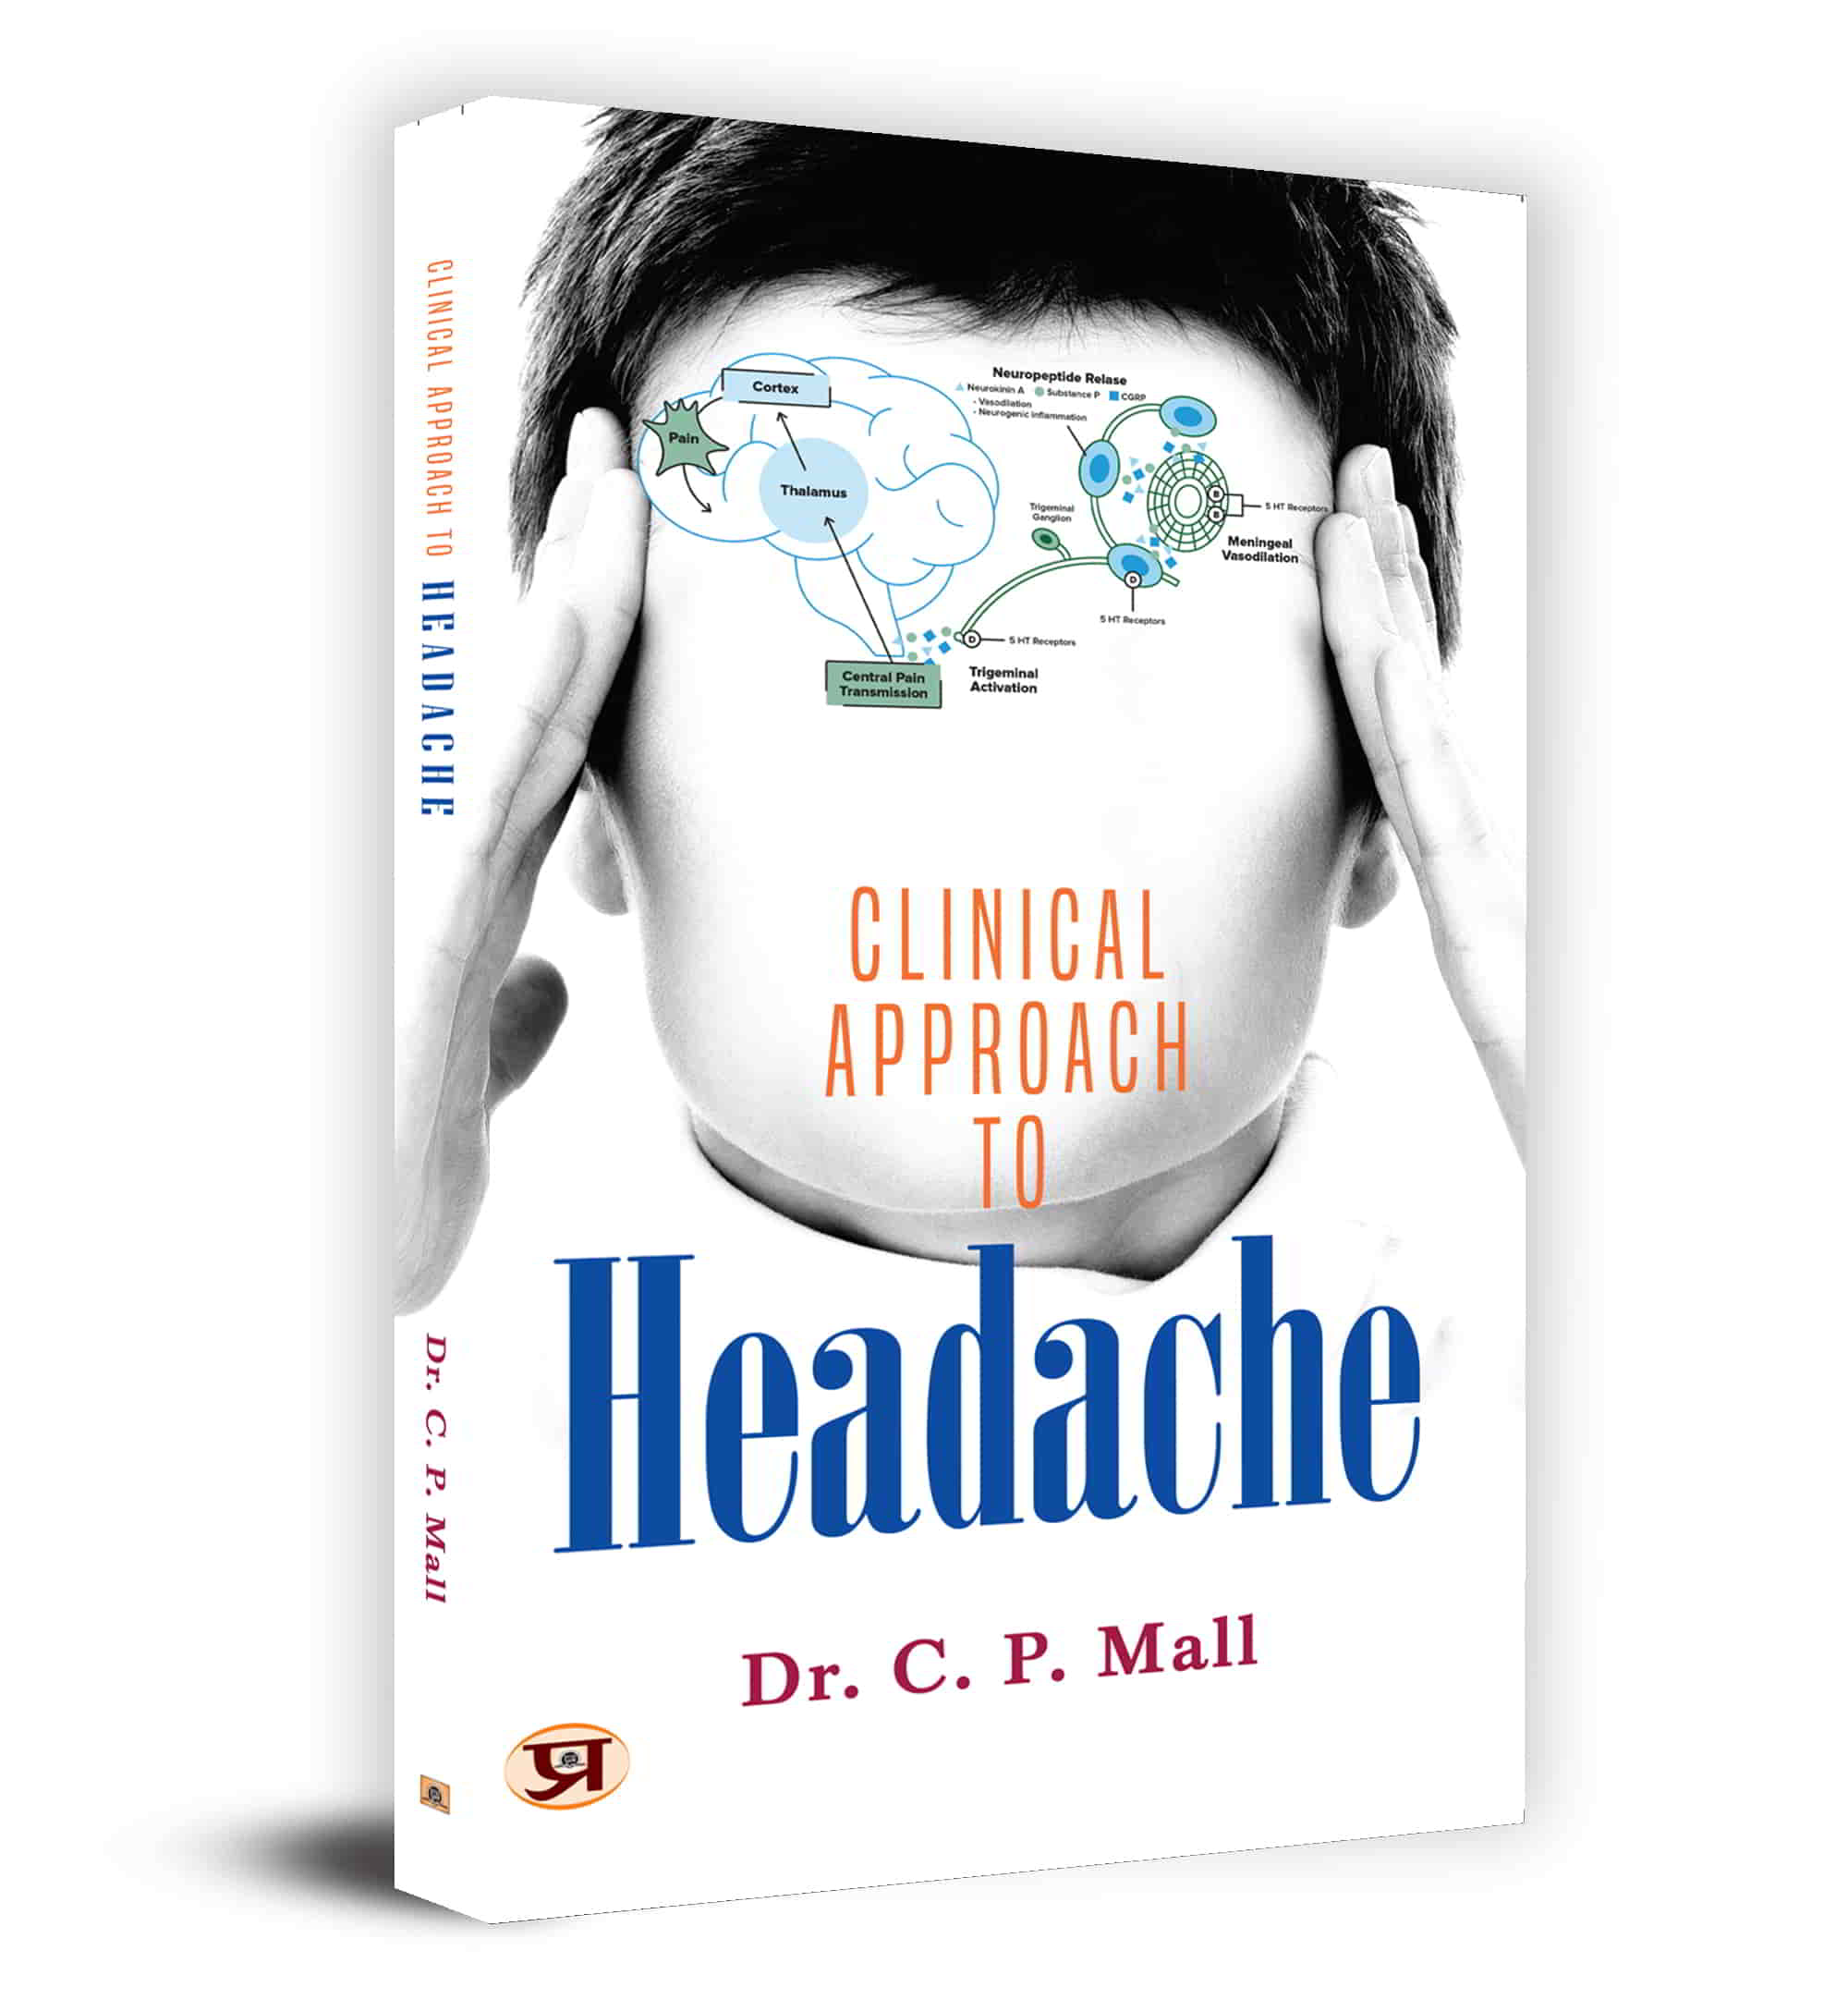 Clinical Approach To Headache